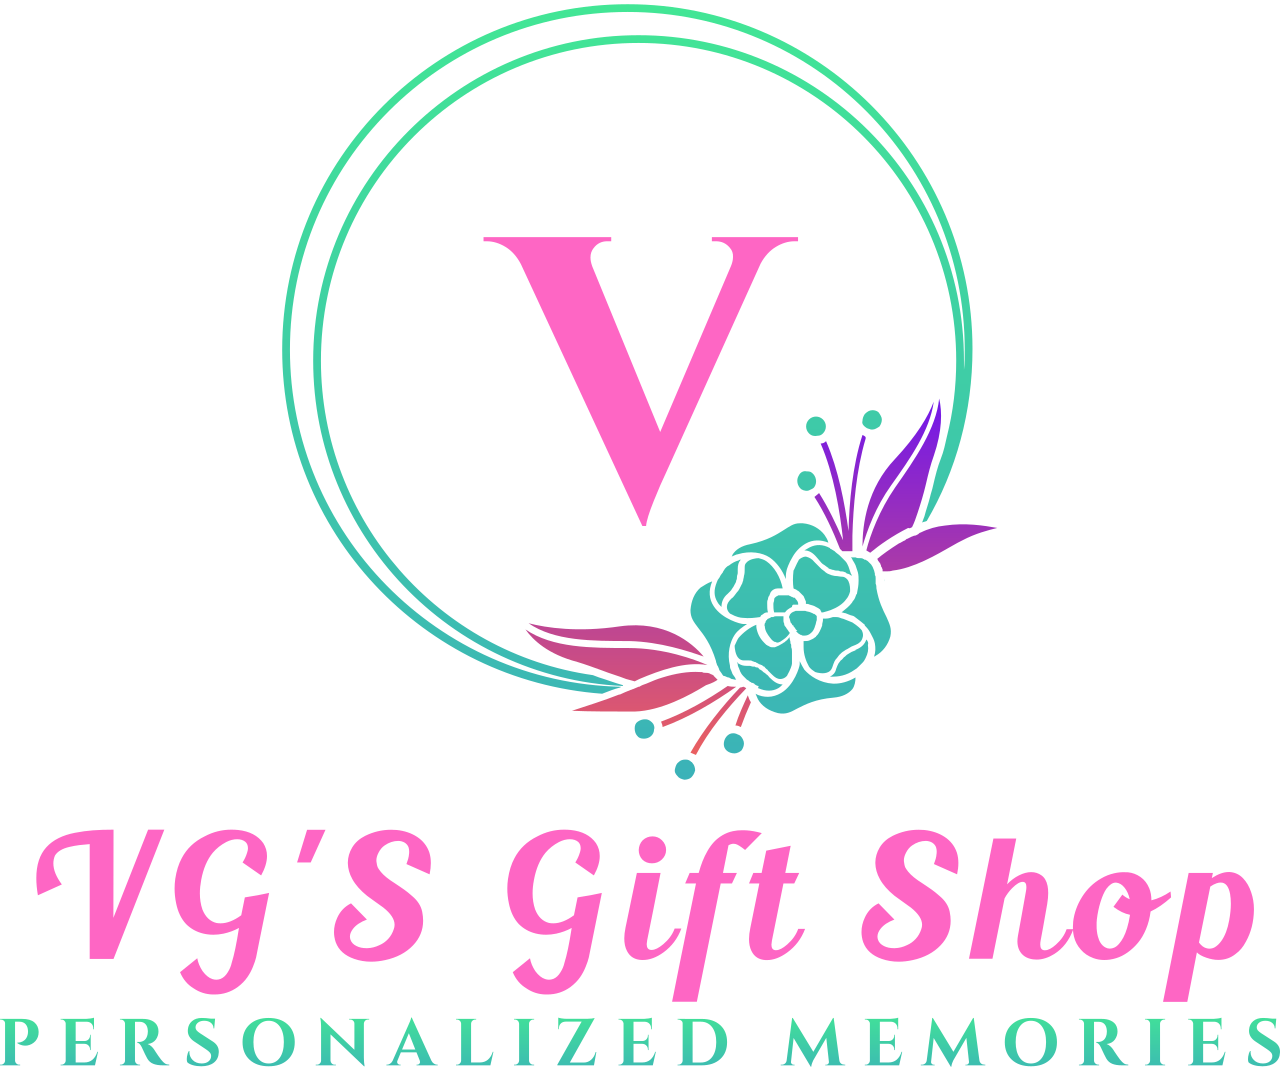 V's logo